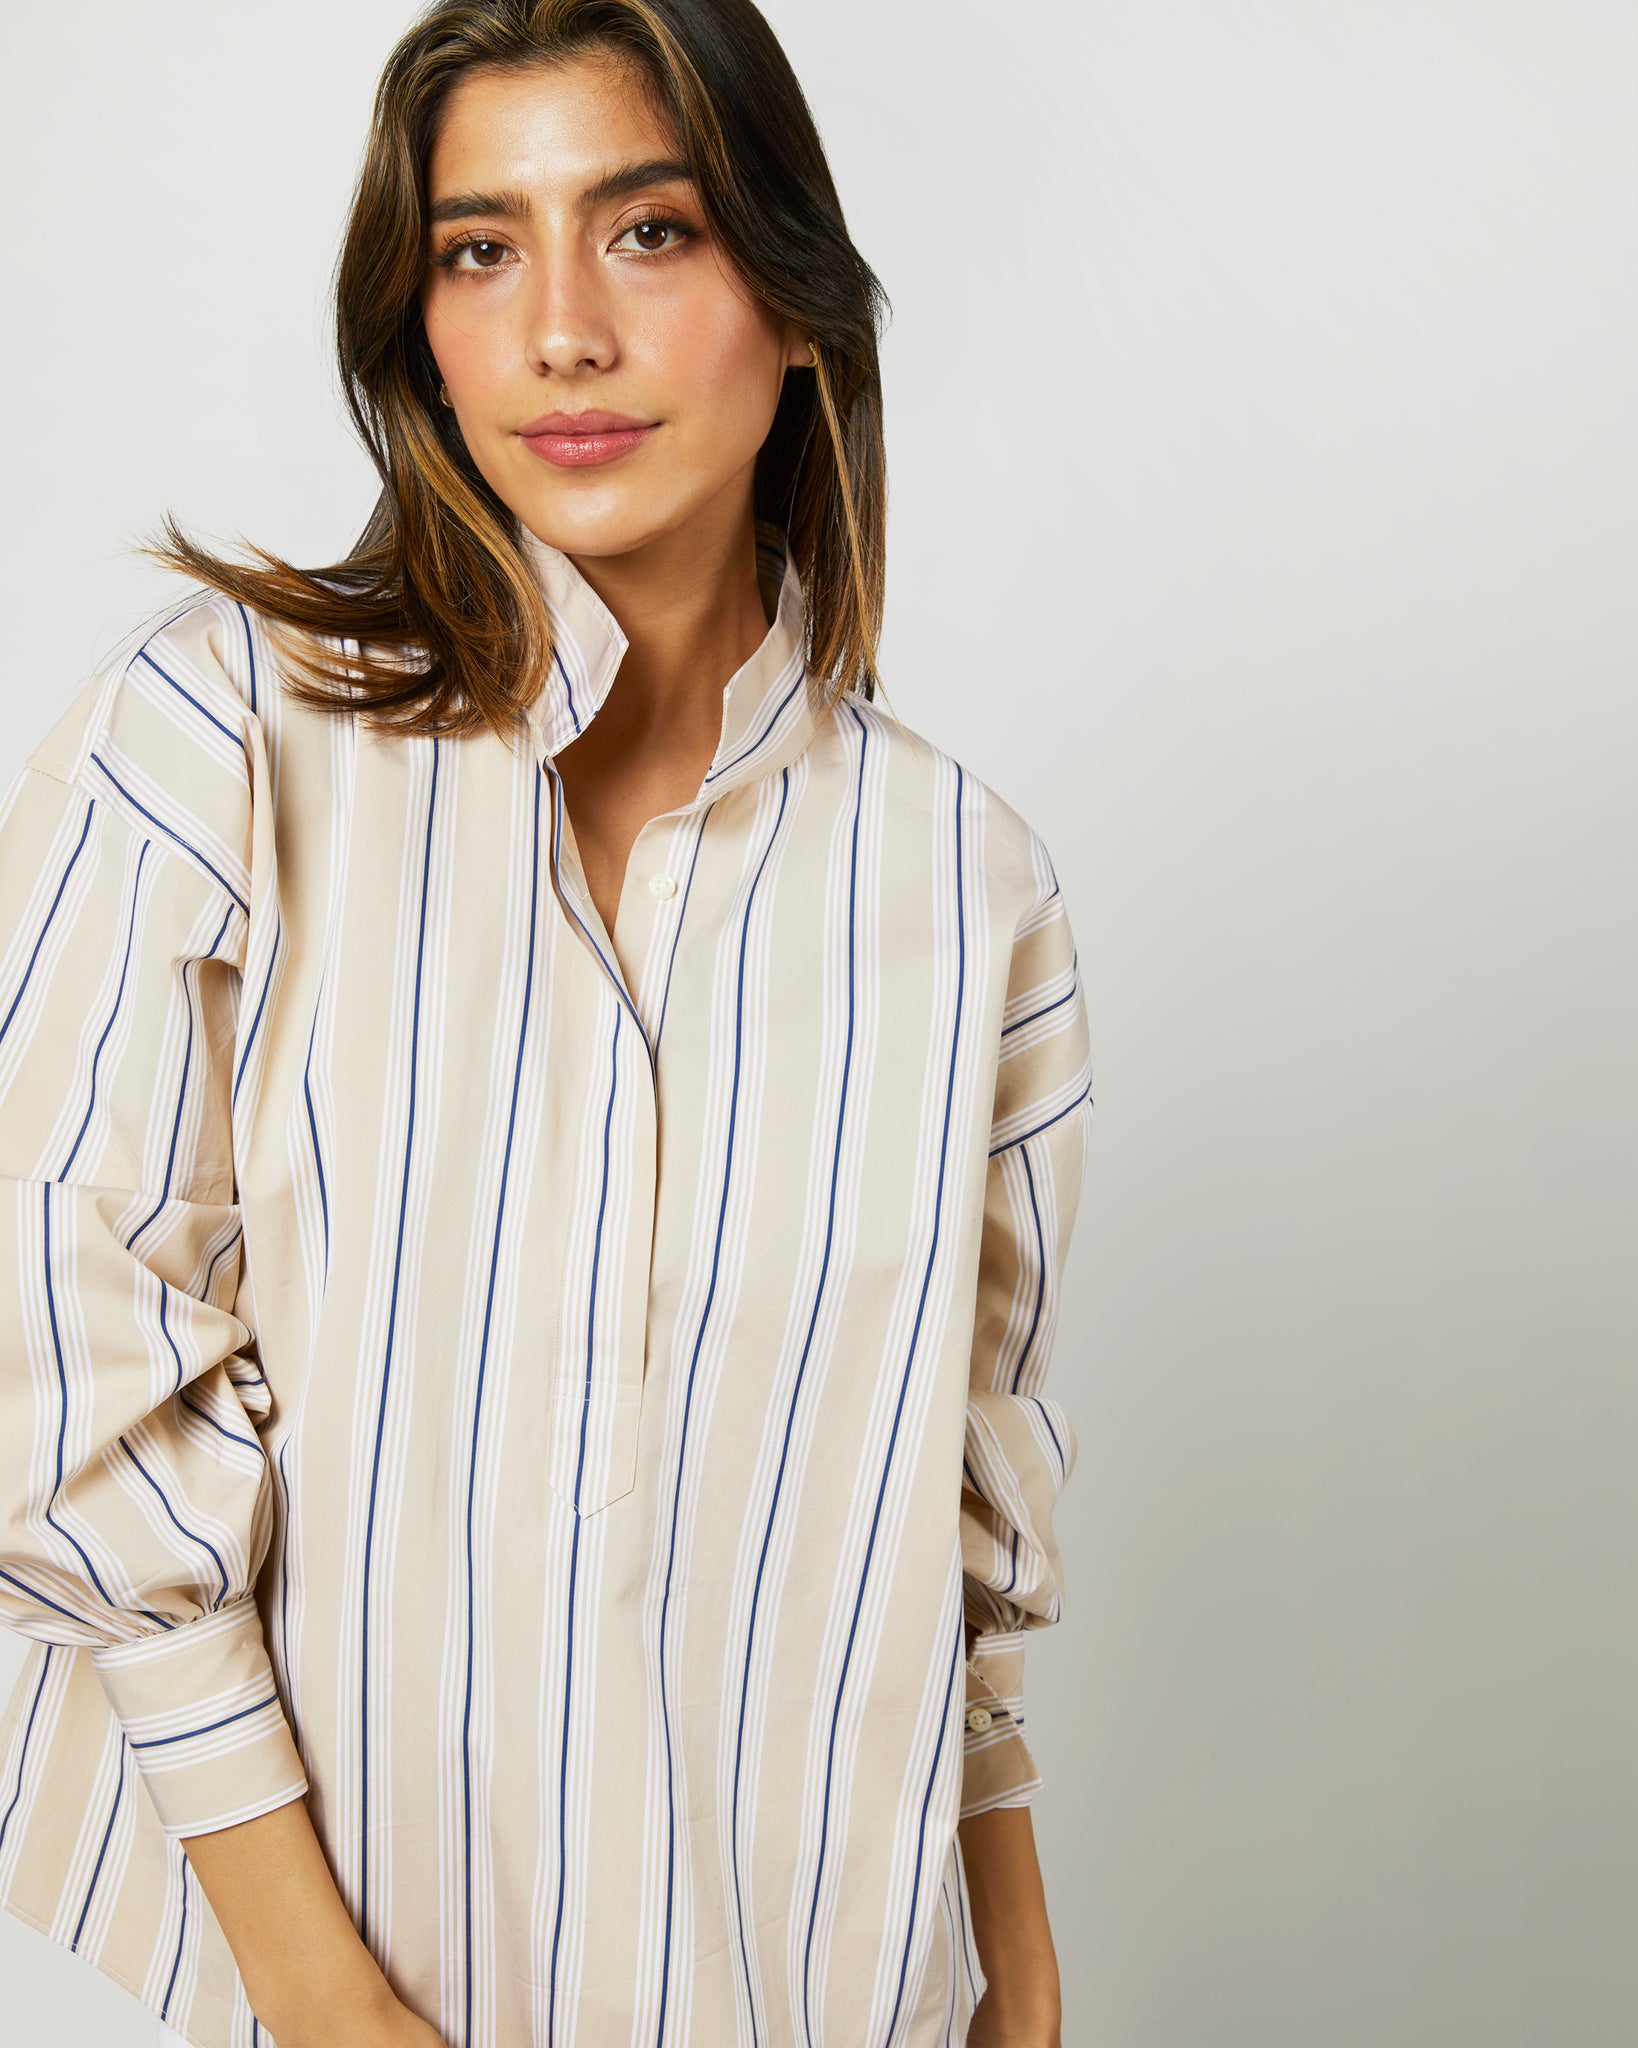 Anaya Popover Shirt in Taupe/White Multi Stripe Poplin